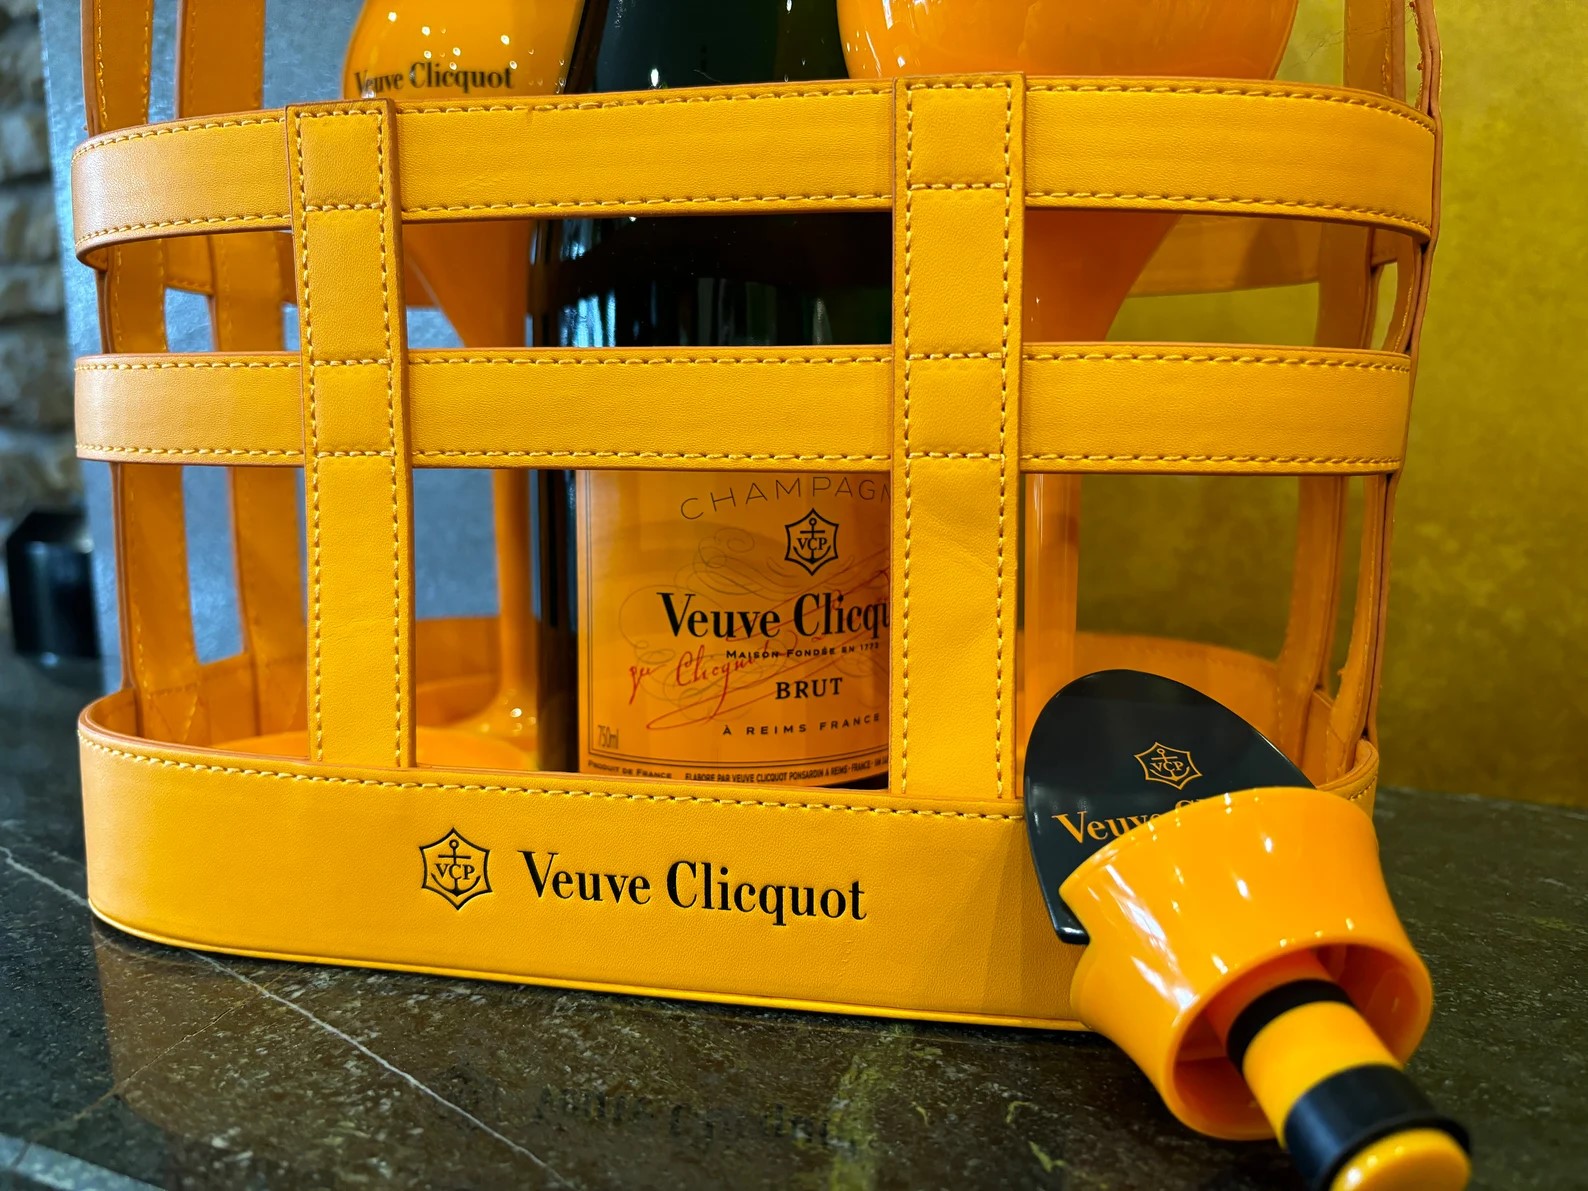 SOLD / ELADVA – Champagne Veuve Clicquot piknik kosár 2 pohárral és díszdugóval – 112.900.-Ft